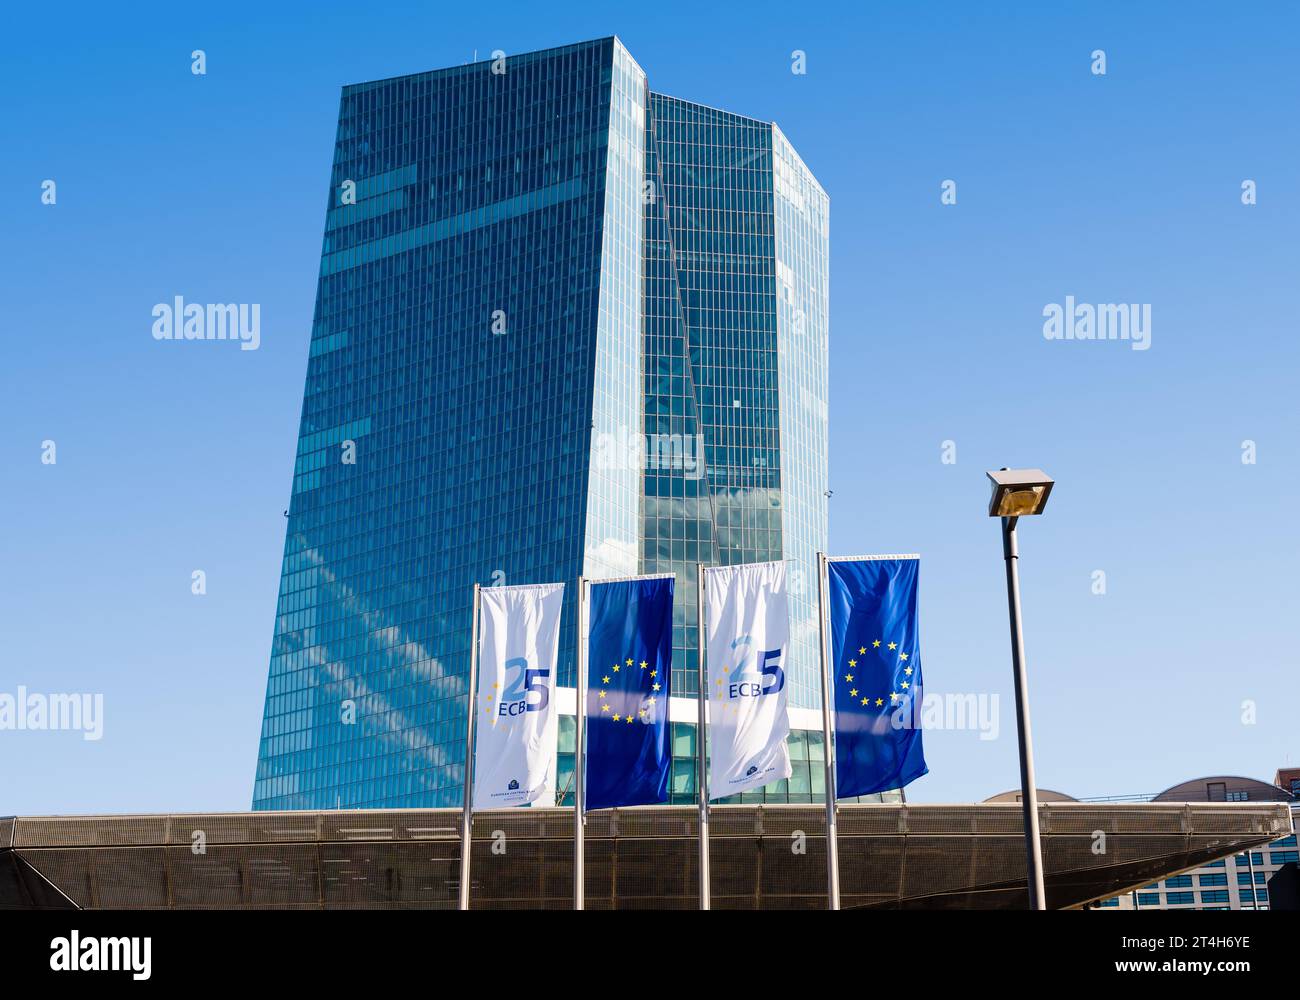 Façade nord du bâtiment Skytower à Francfort, Allemagne, siège de la Banque centrale européenne (BCE) avec bannières de l'Union européenne. Banque D'Images